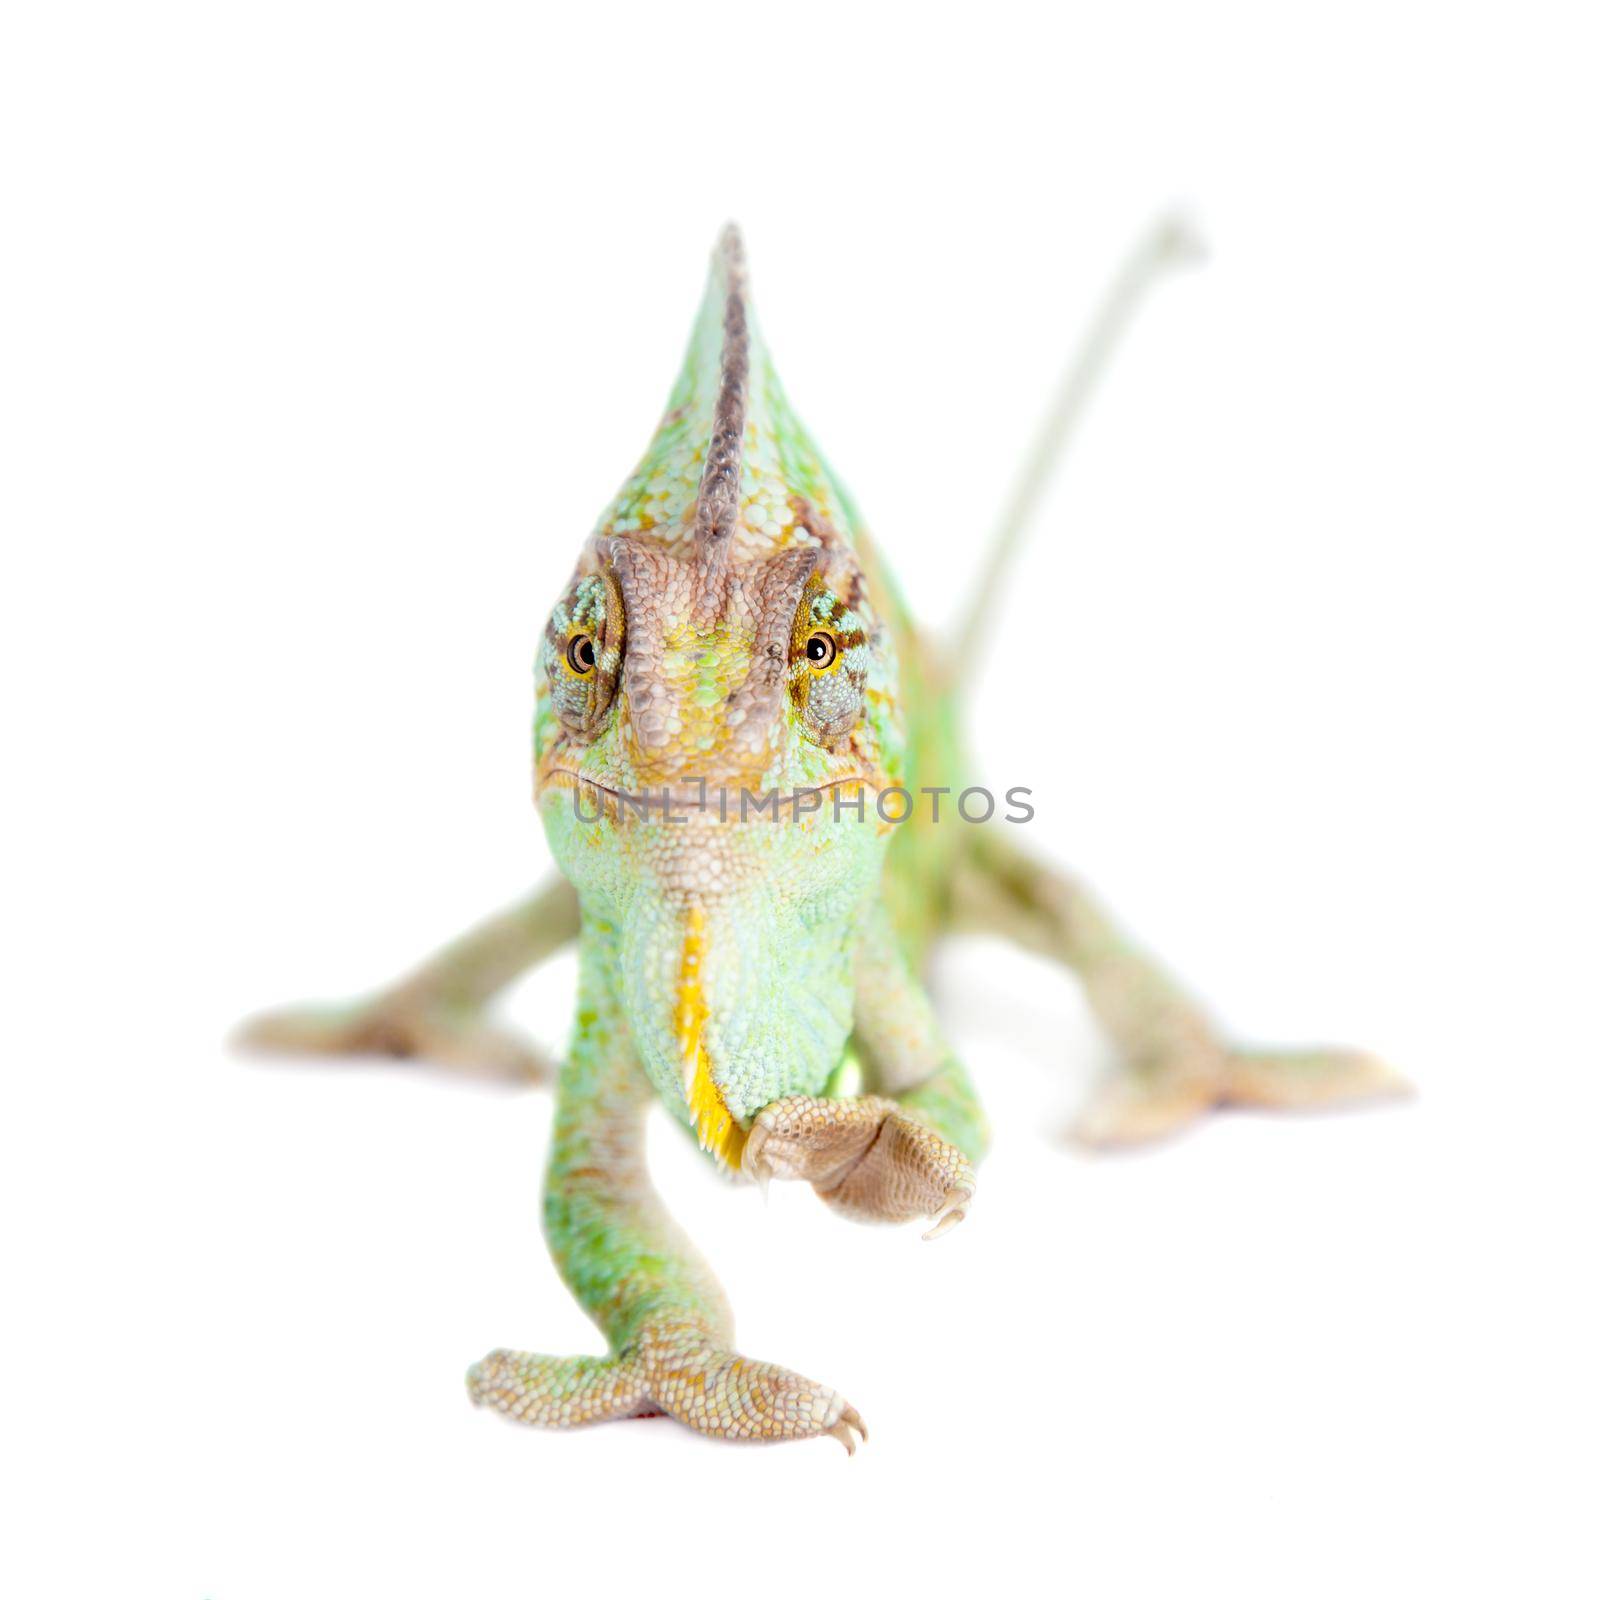 The veiled chameleon, Chamaeleo calyptratus, female isolated on white background